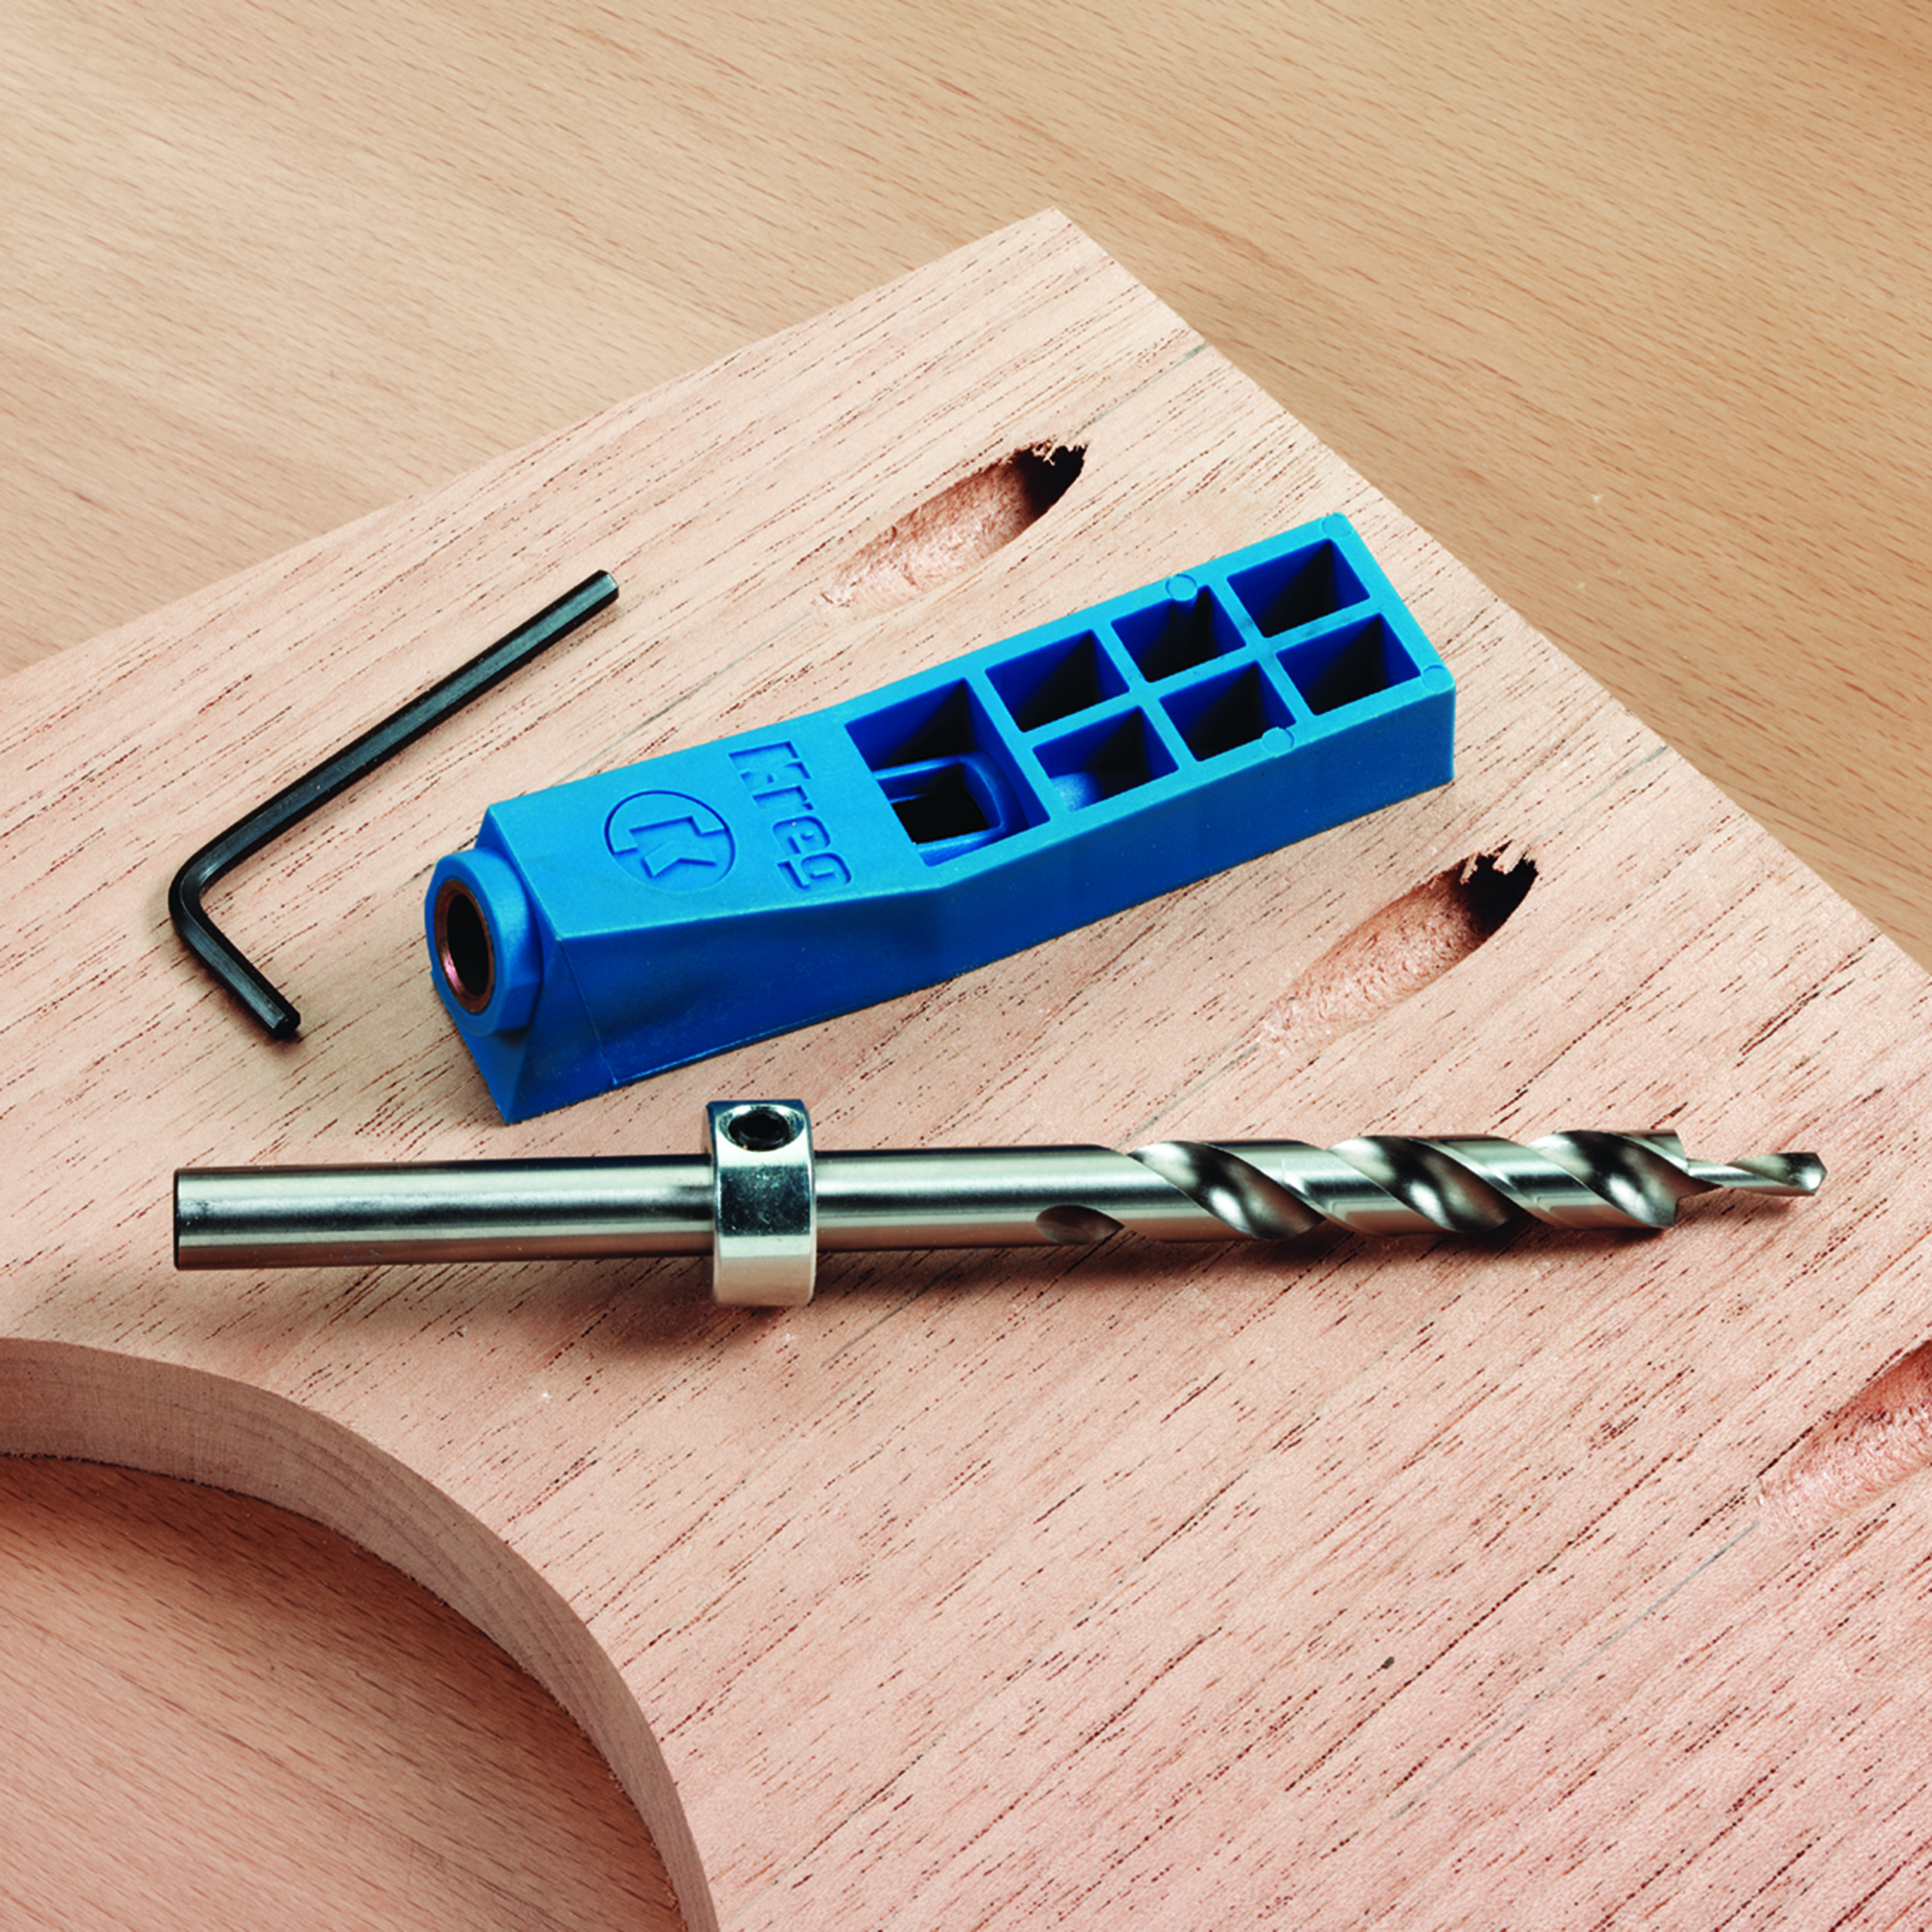 Kreg Jig Mini Kit With Step-drill Bit